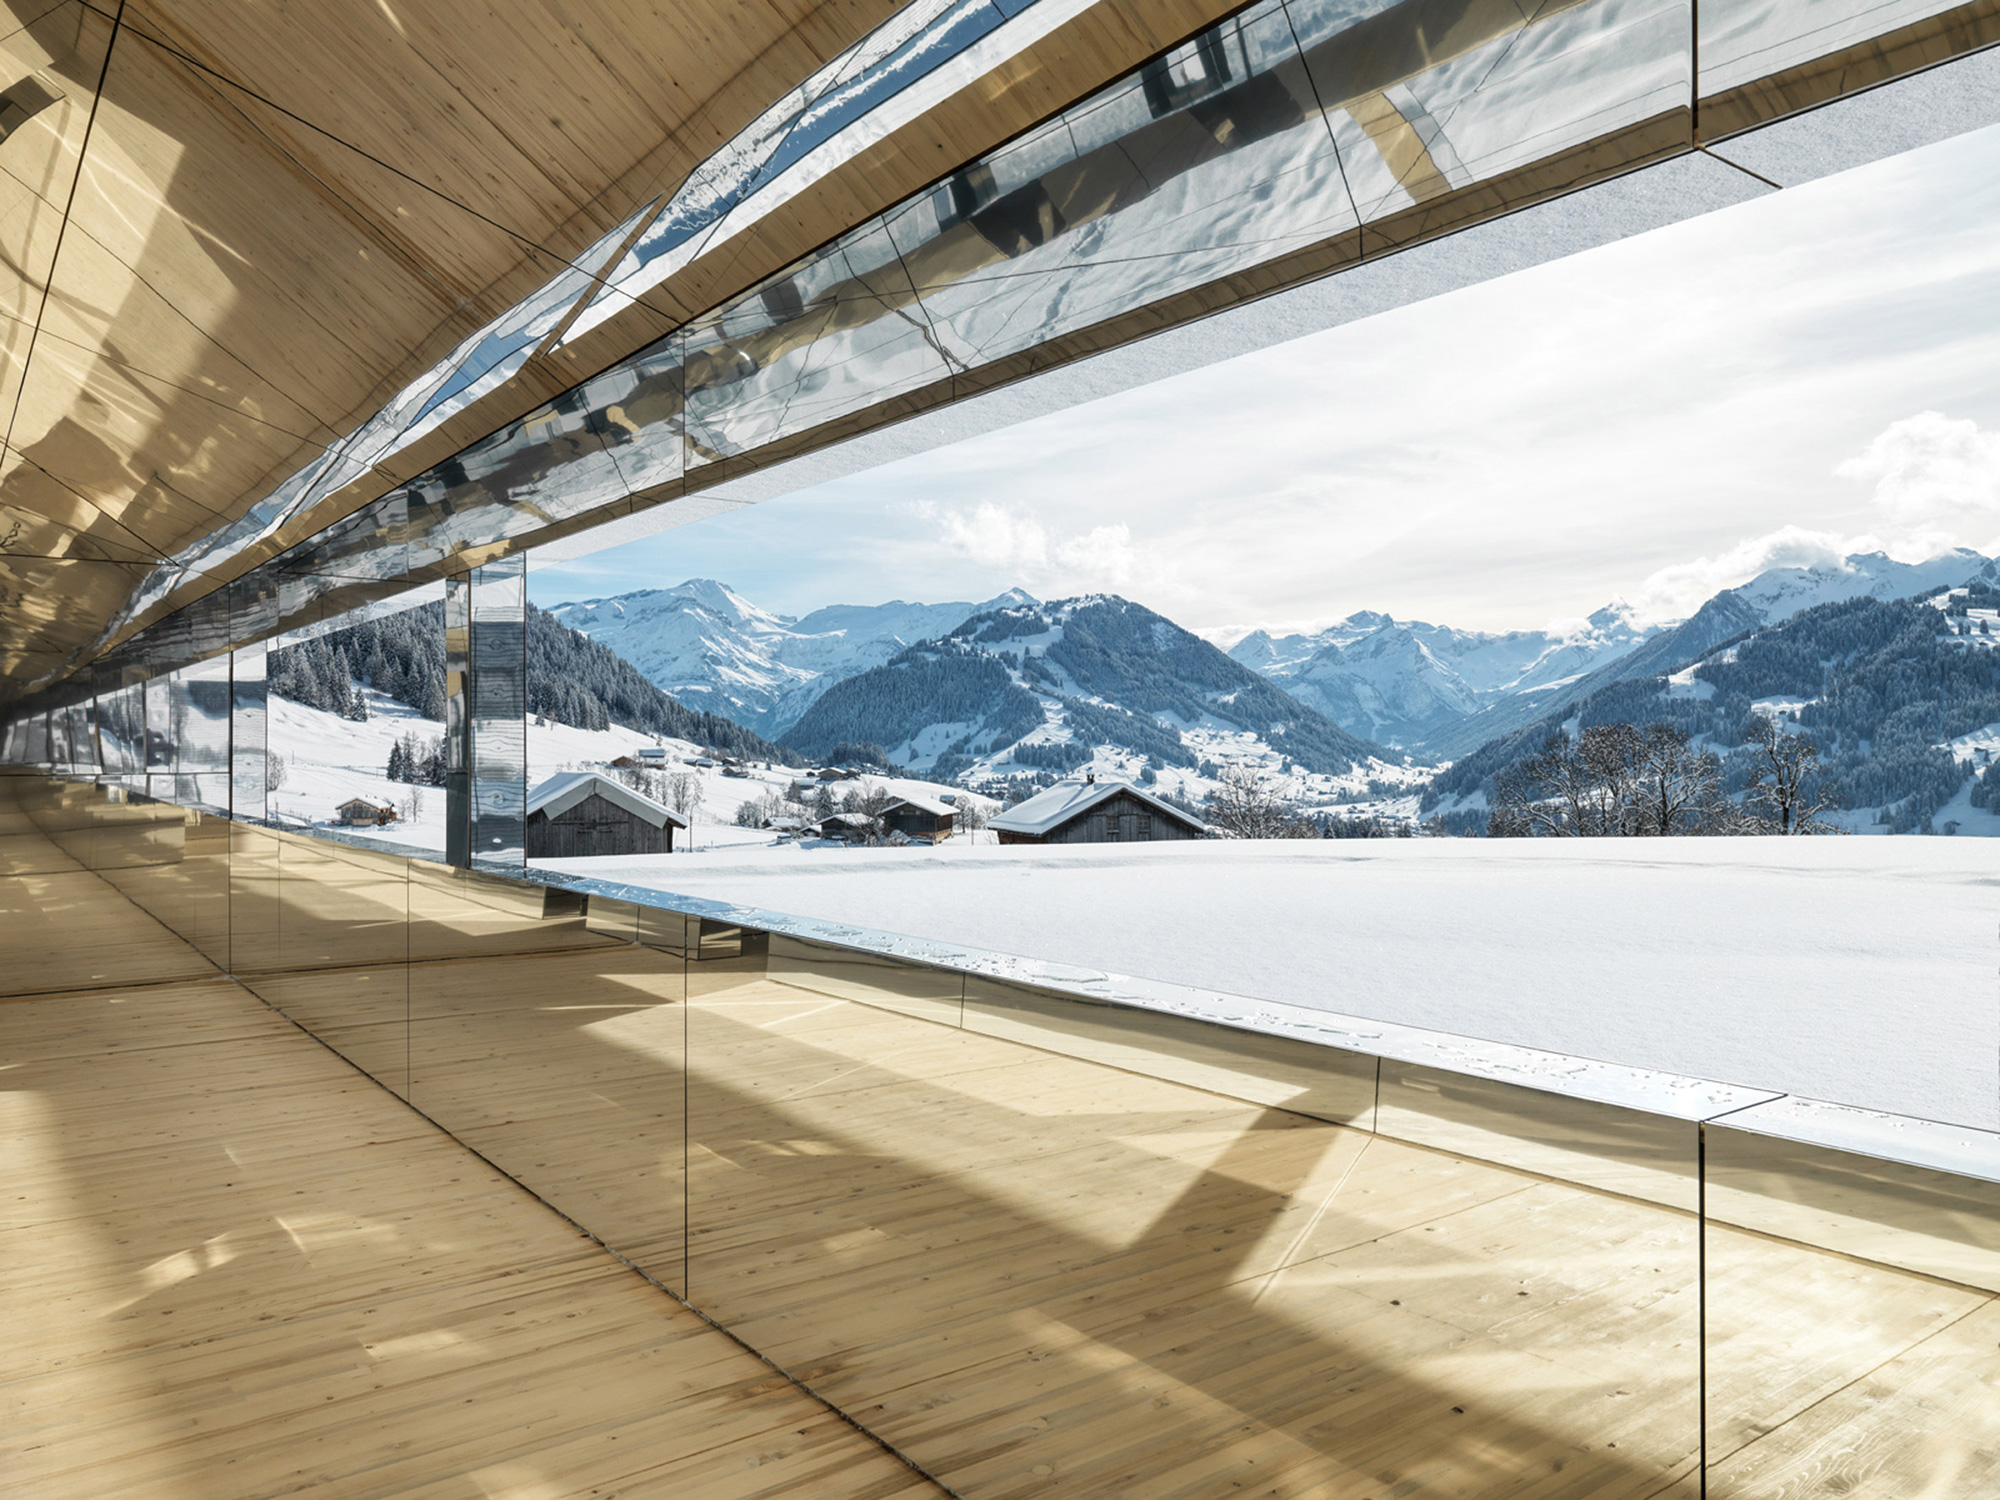 Mirage Gstaad by Doug Aitken, interiors